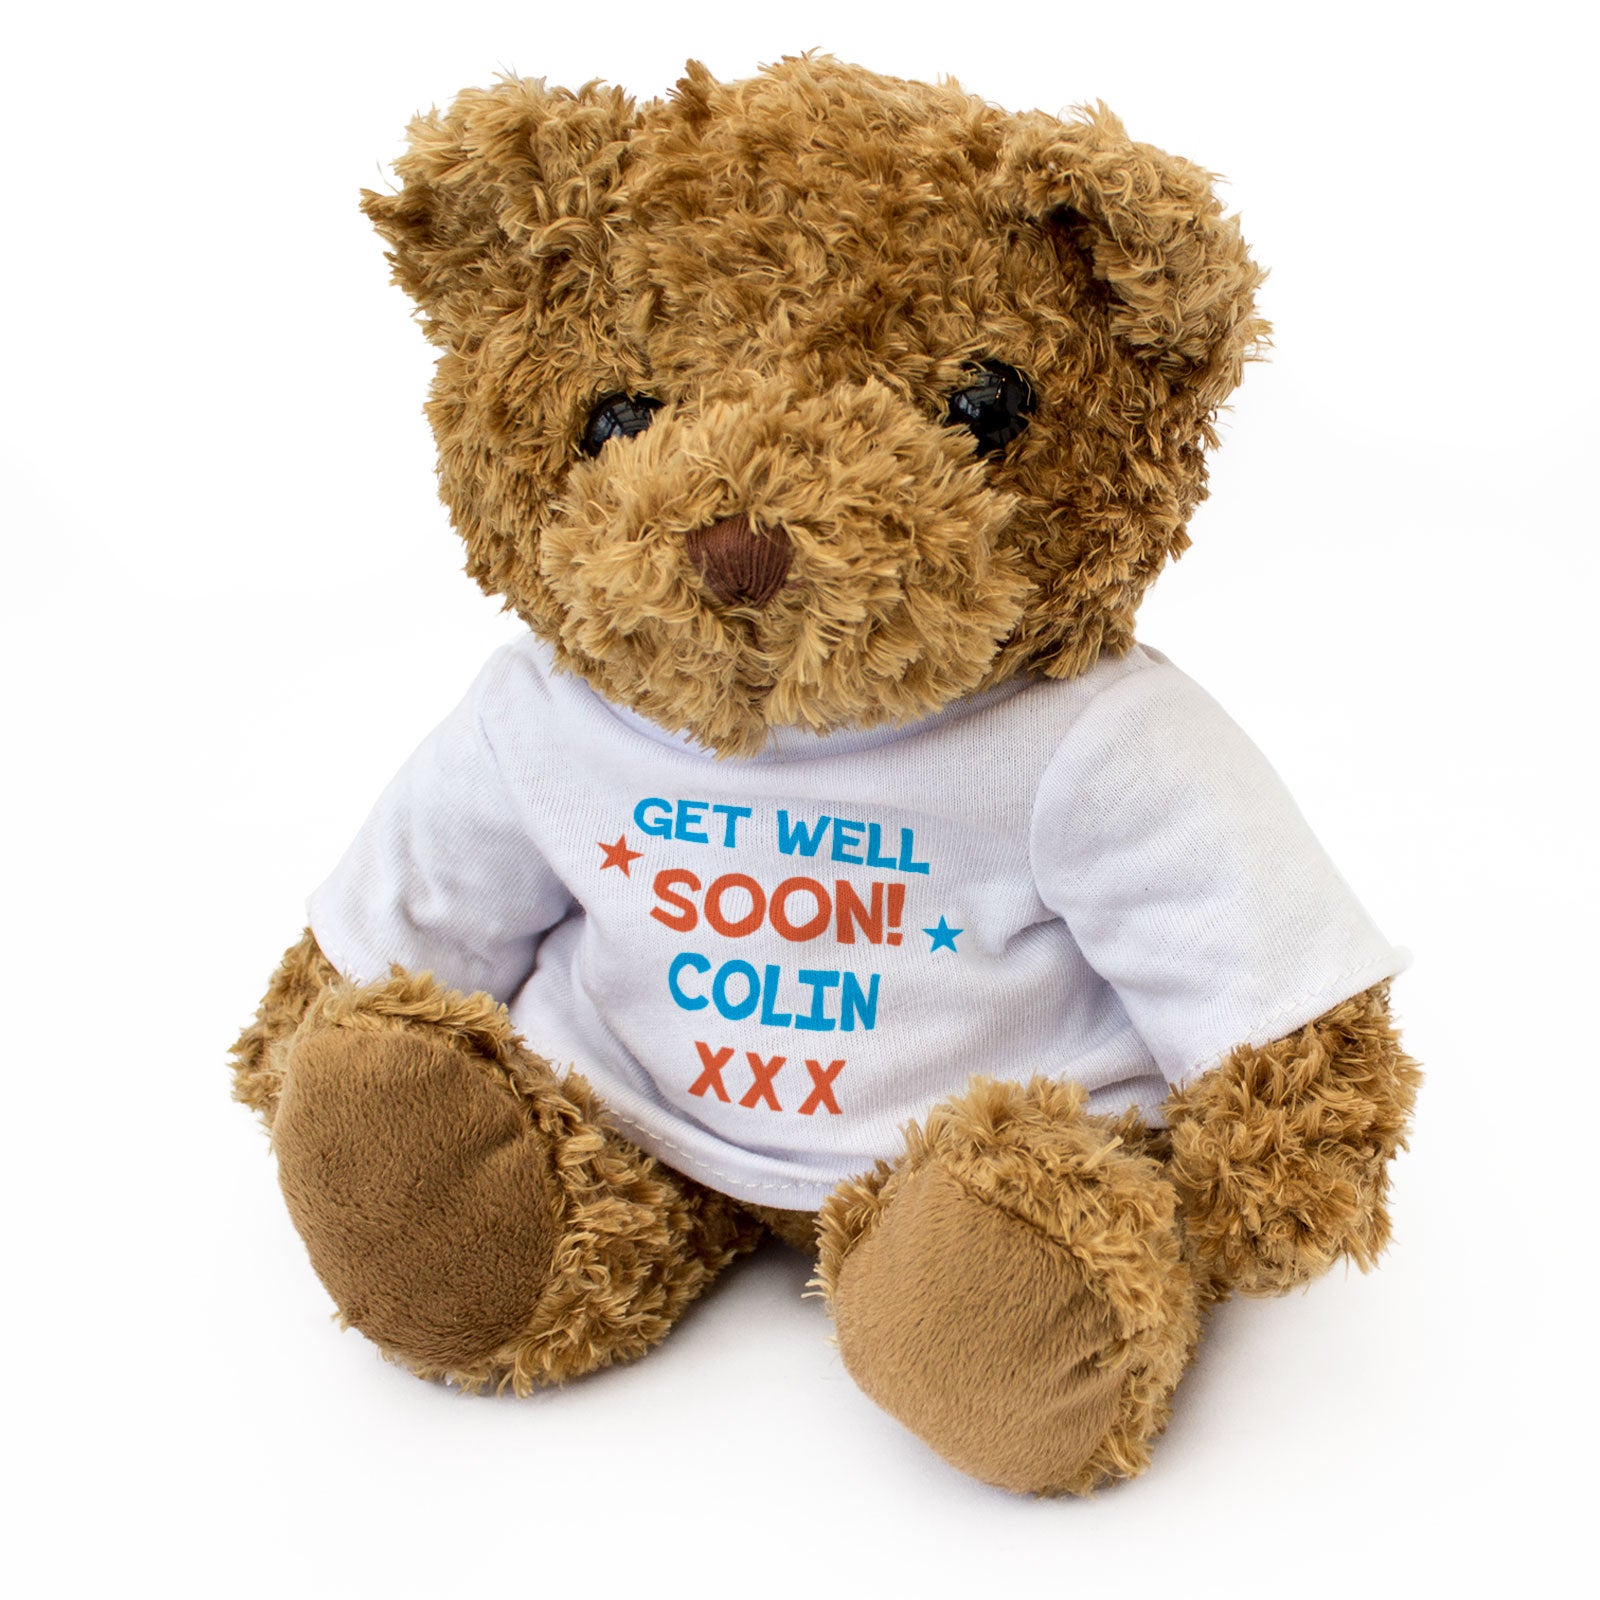 Get Well Soon Colin - Teddy Bear